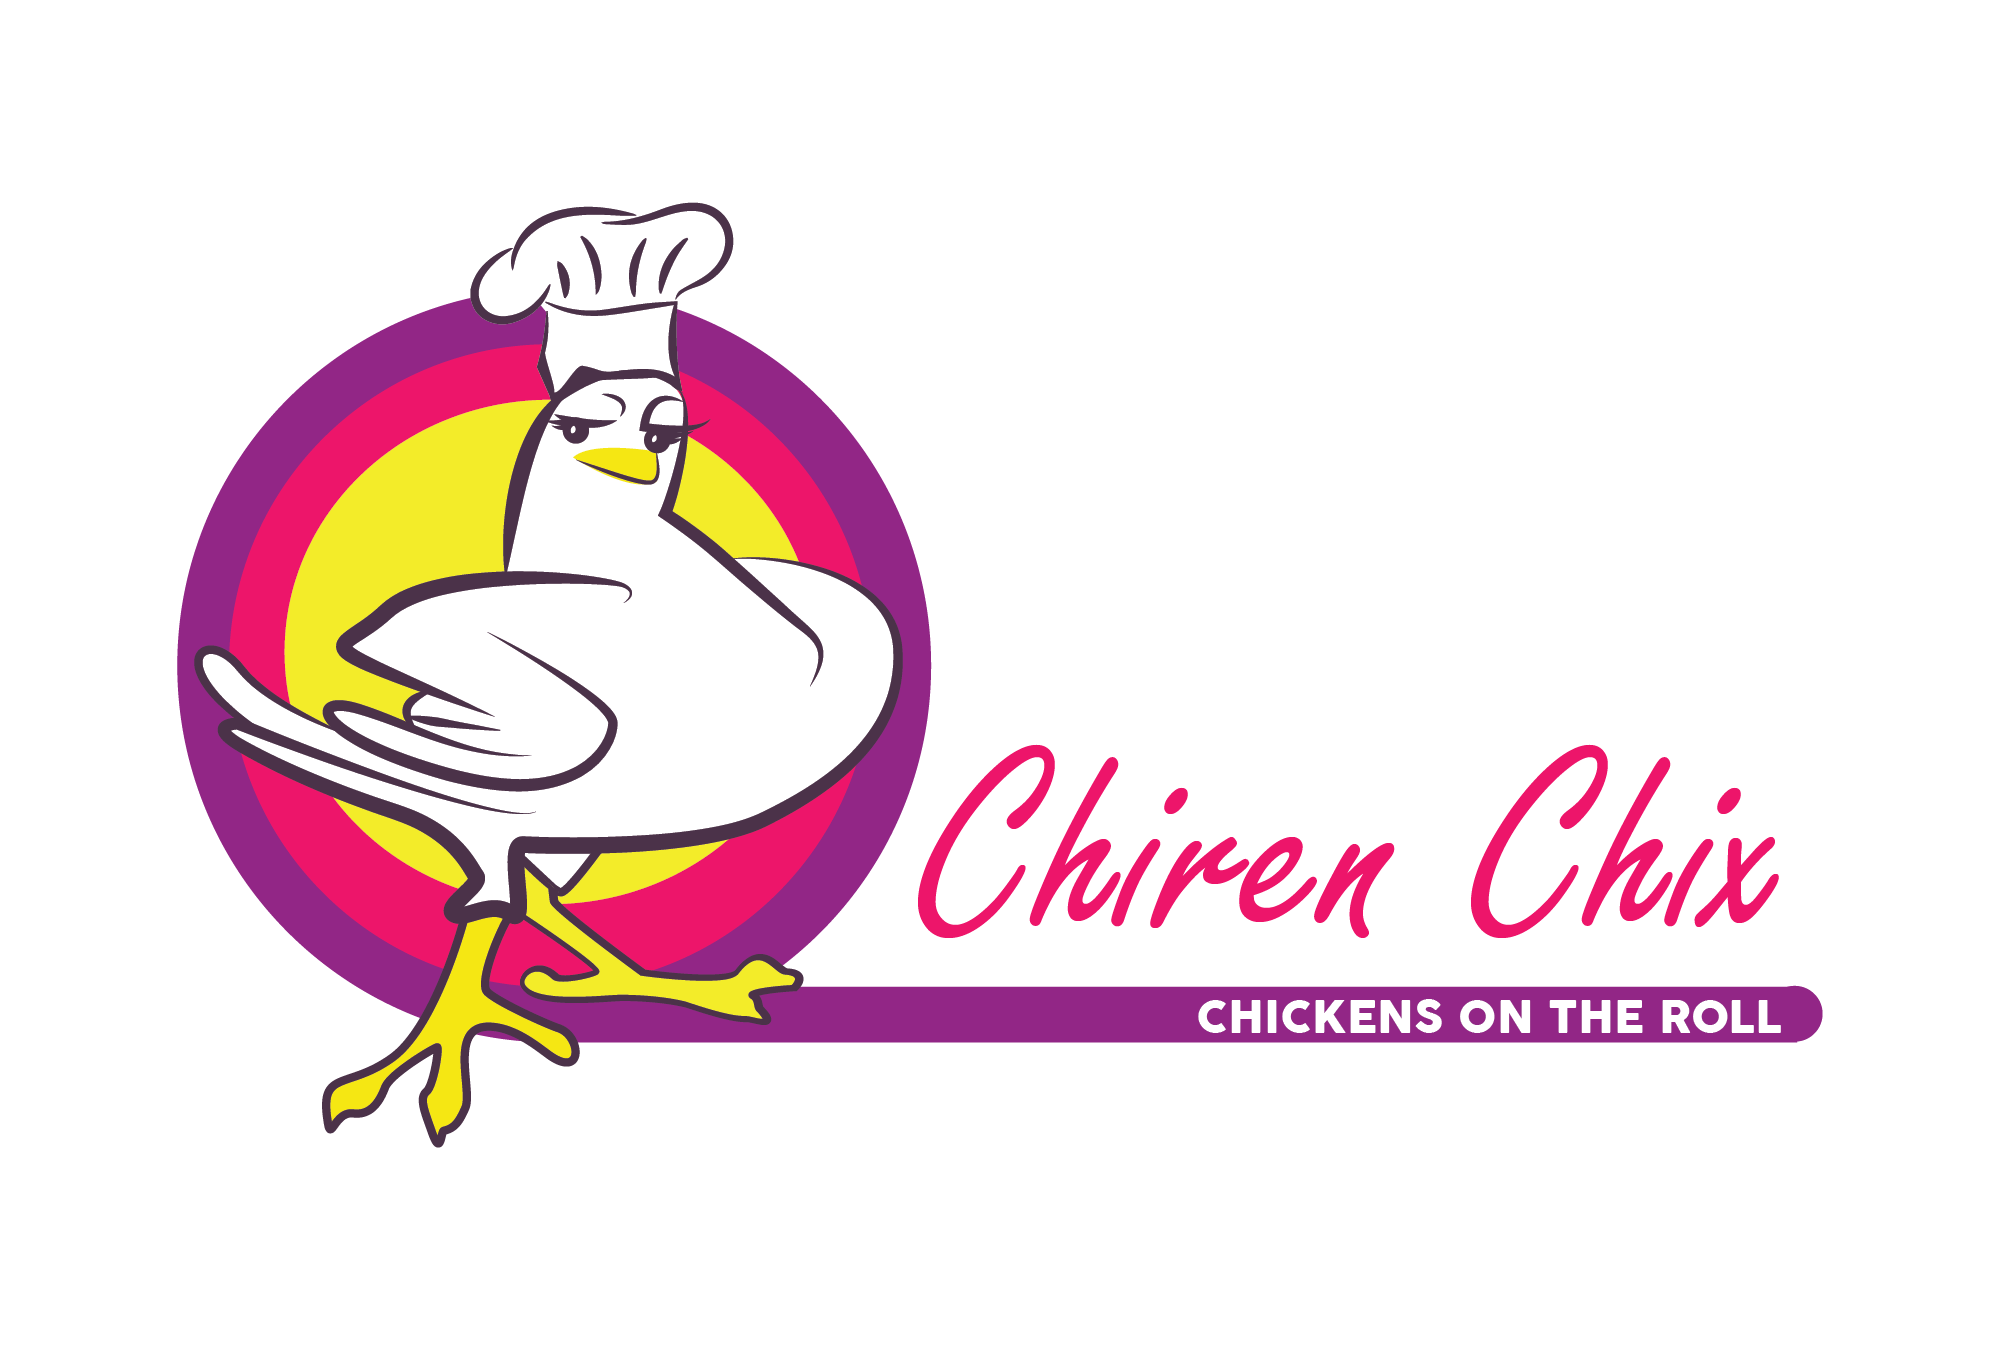 Peri-Peri-Creative-Chiren-Chix-logo